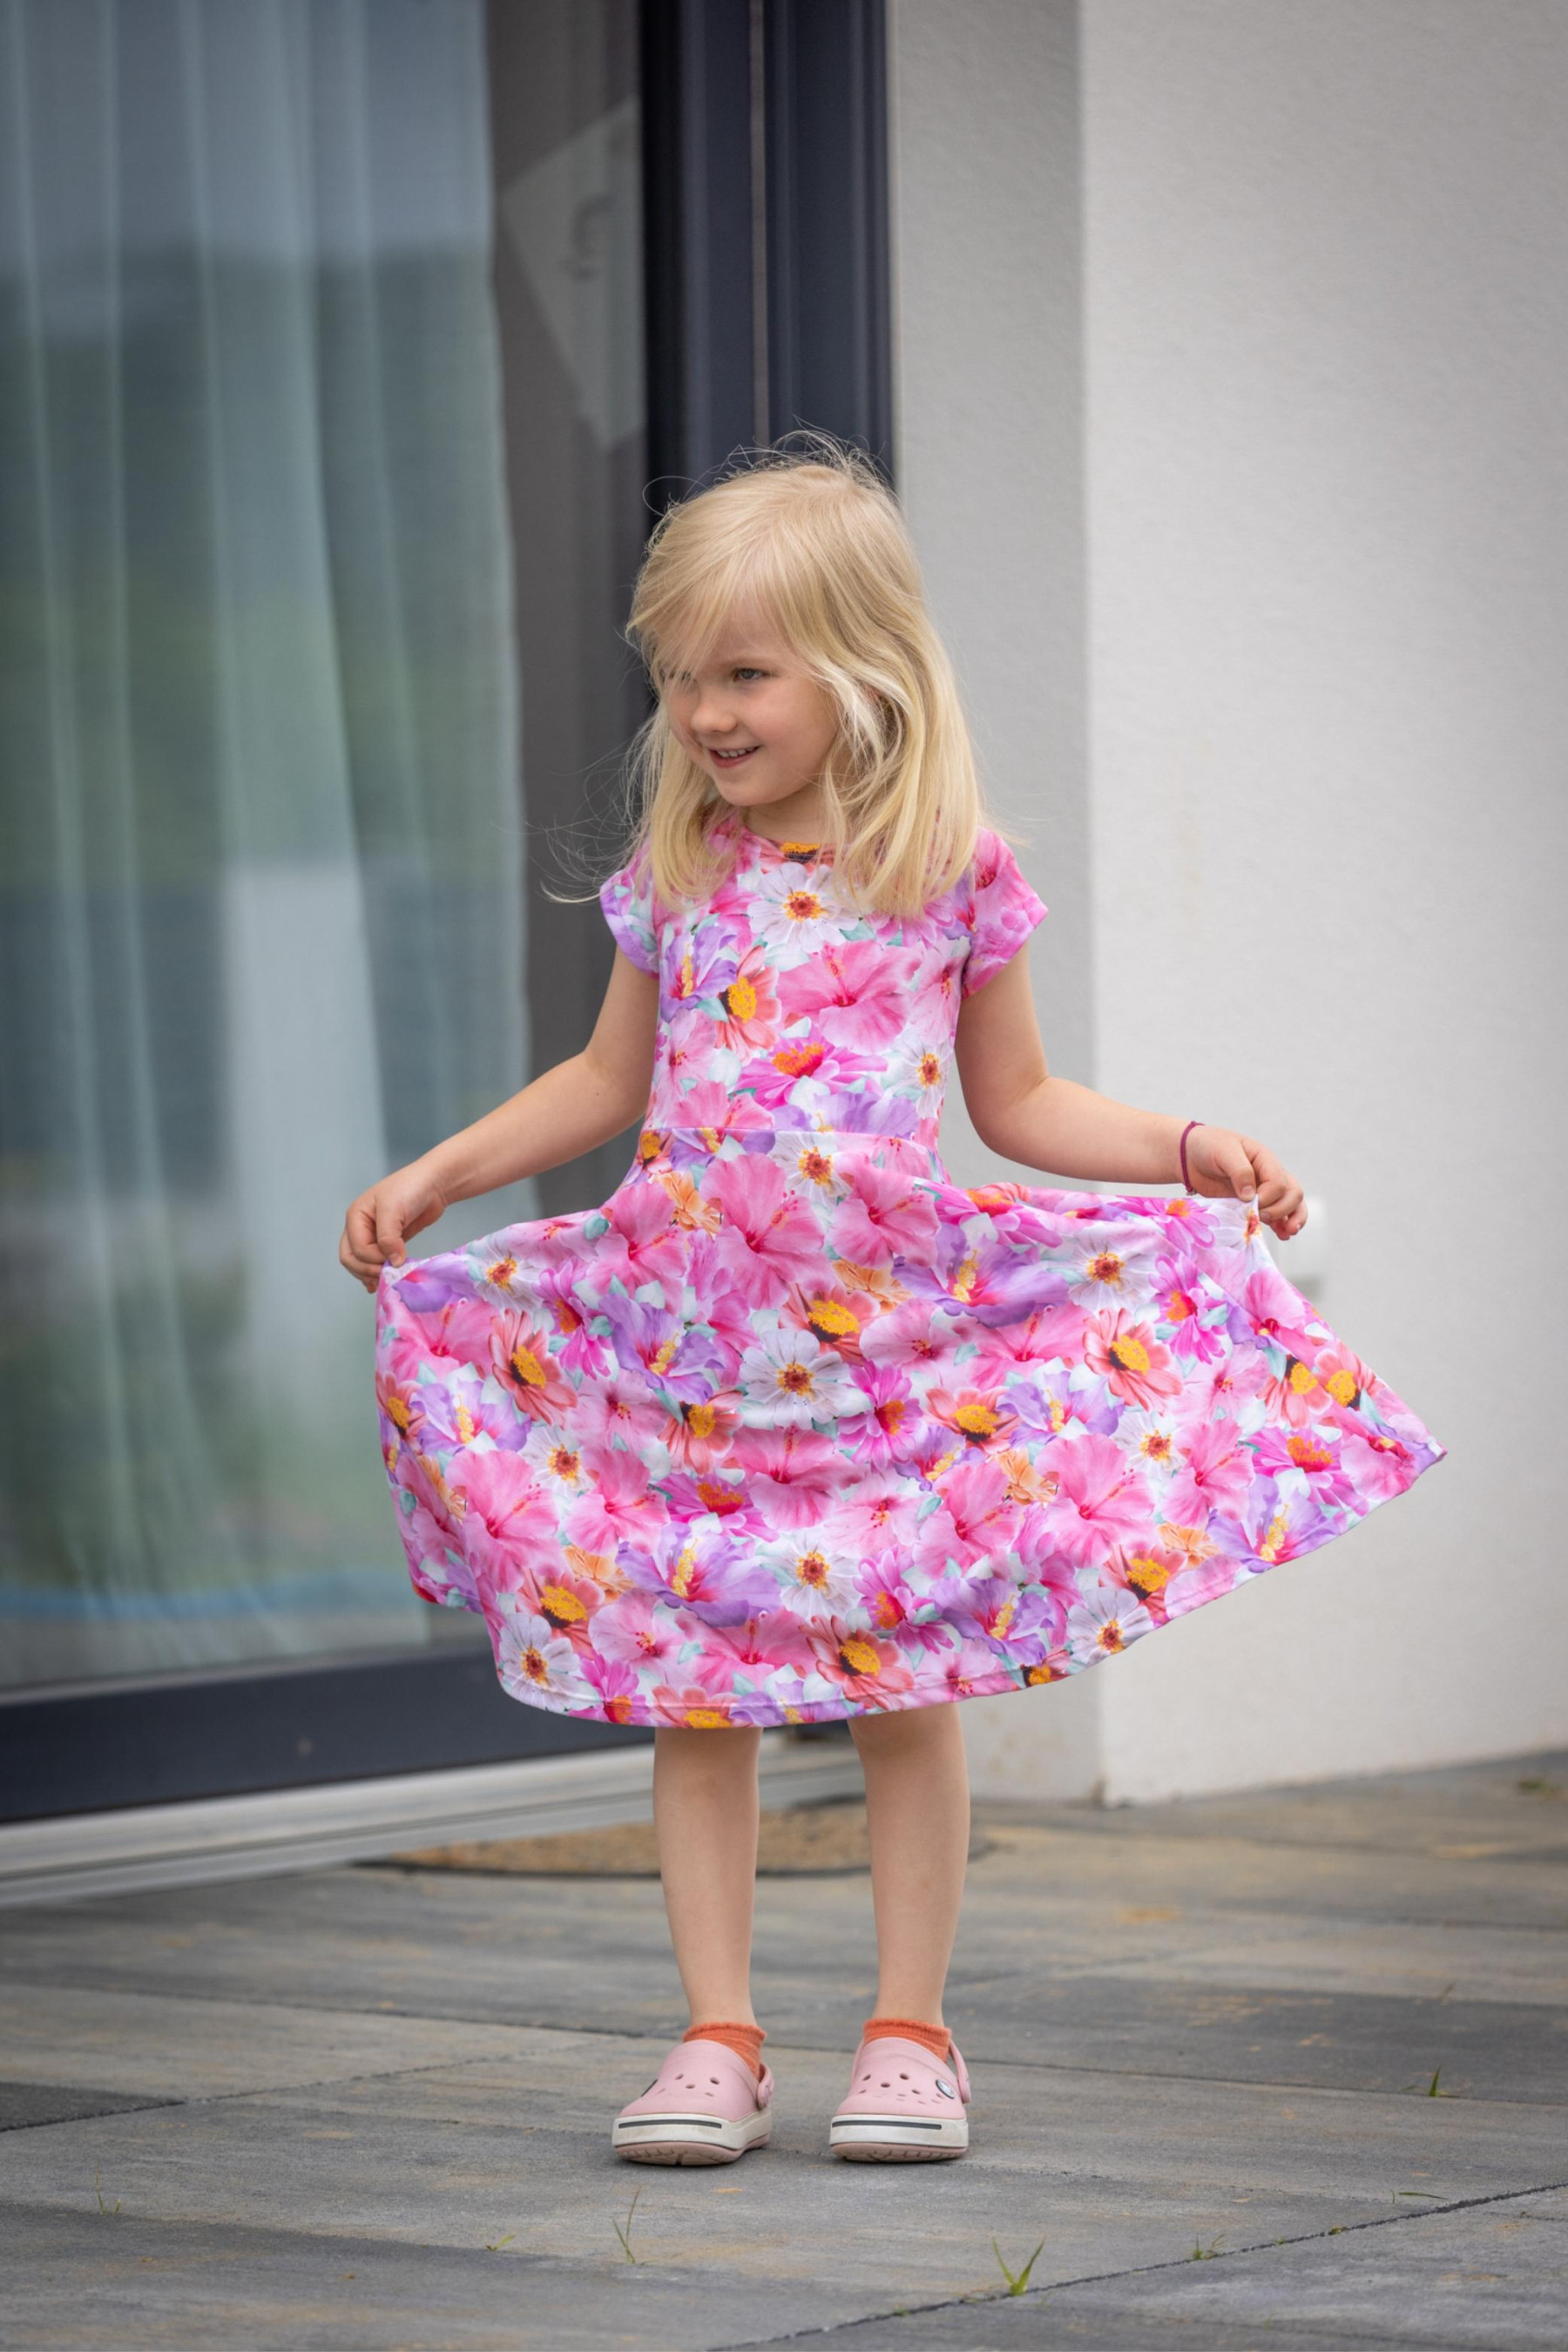 Dětské šaty "MIA" - FLOWERS wz.10 - šicí souprava